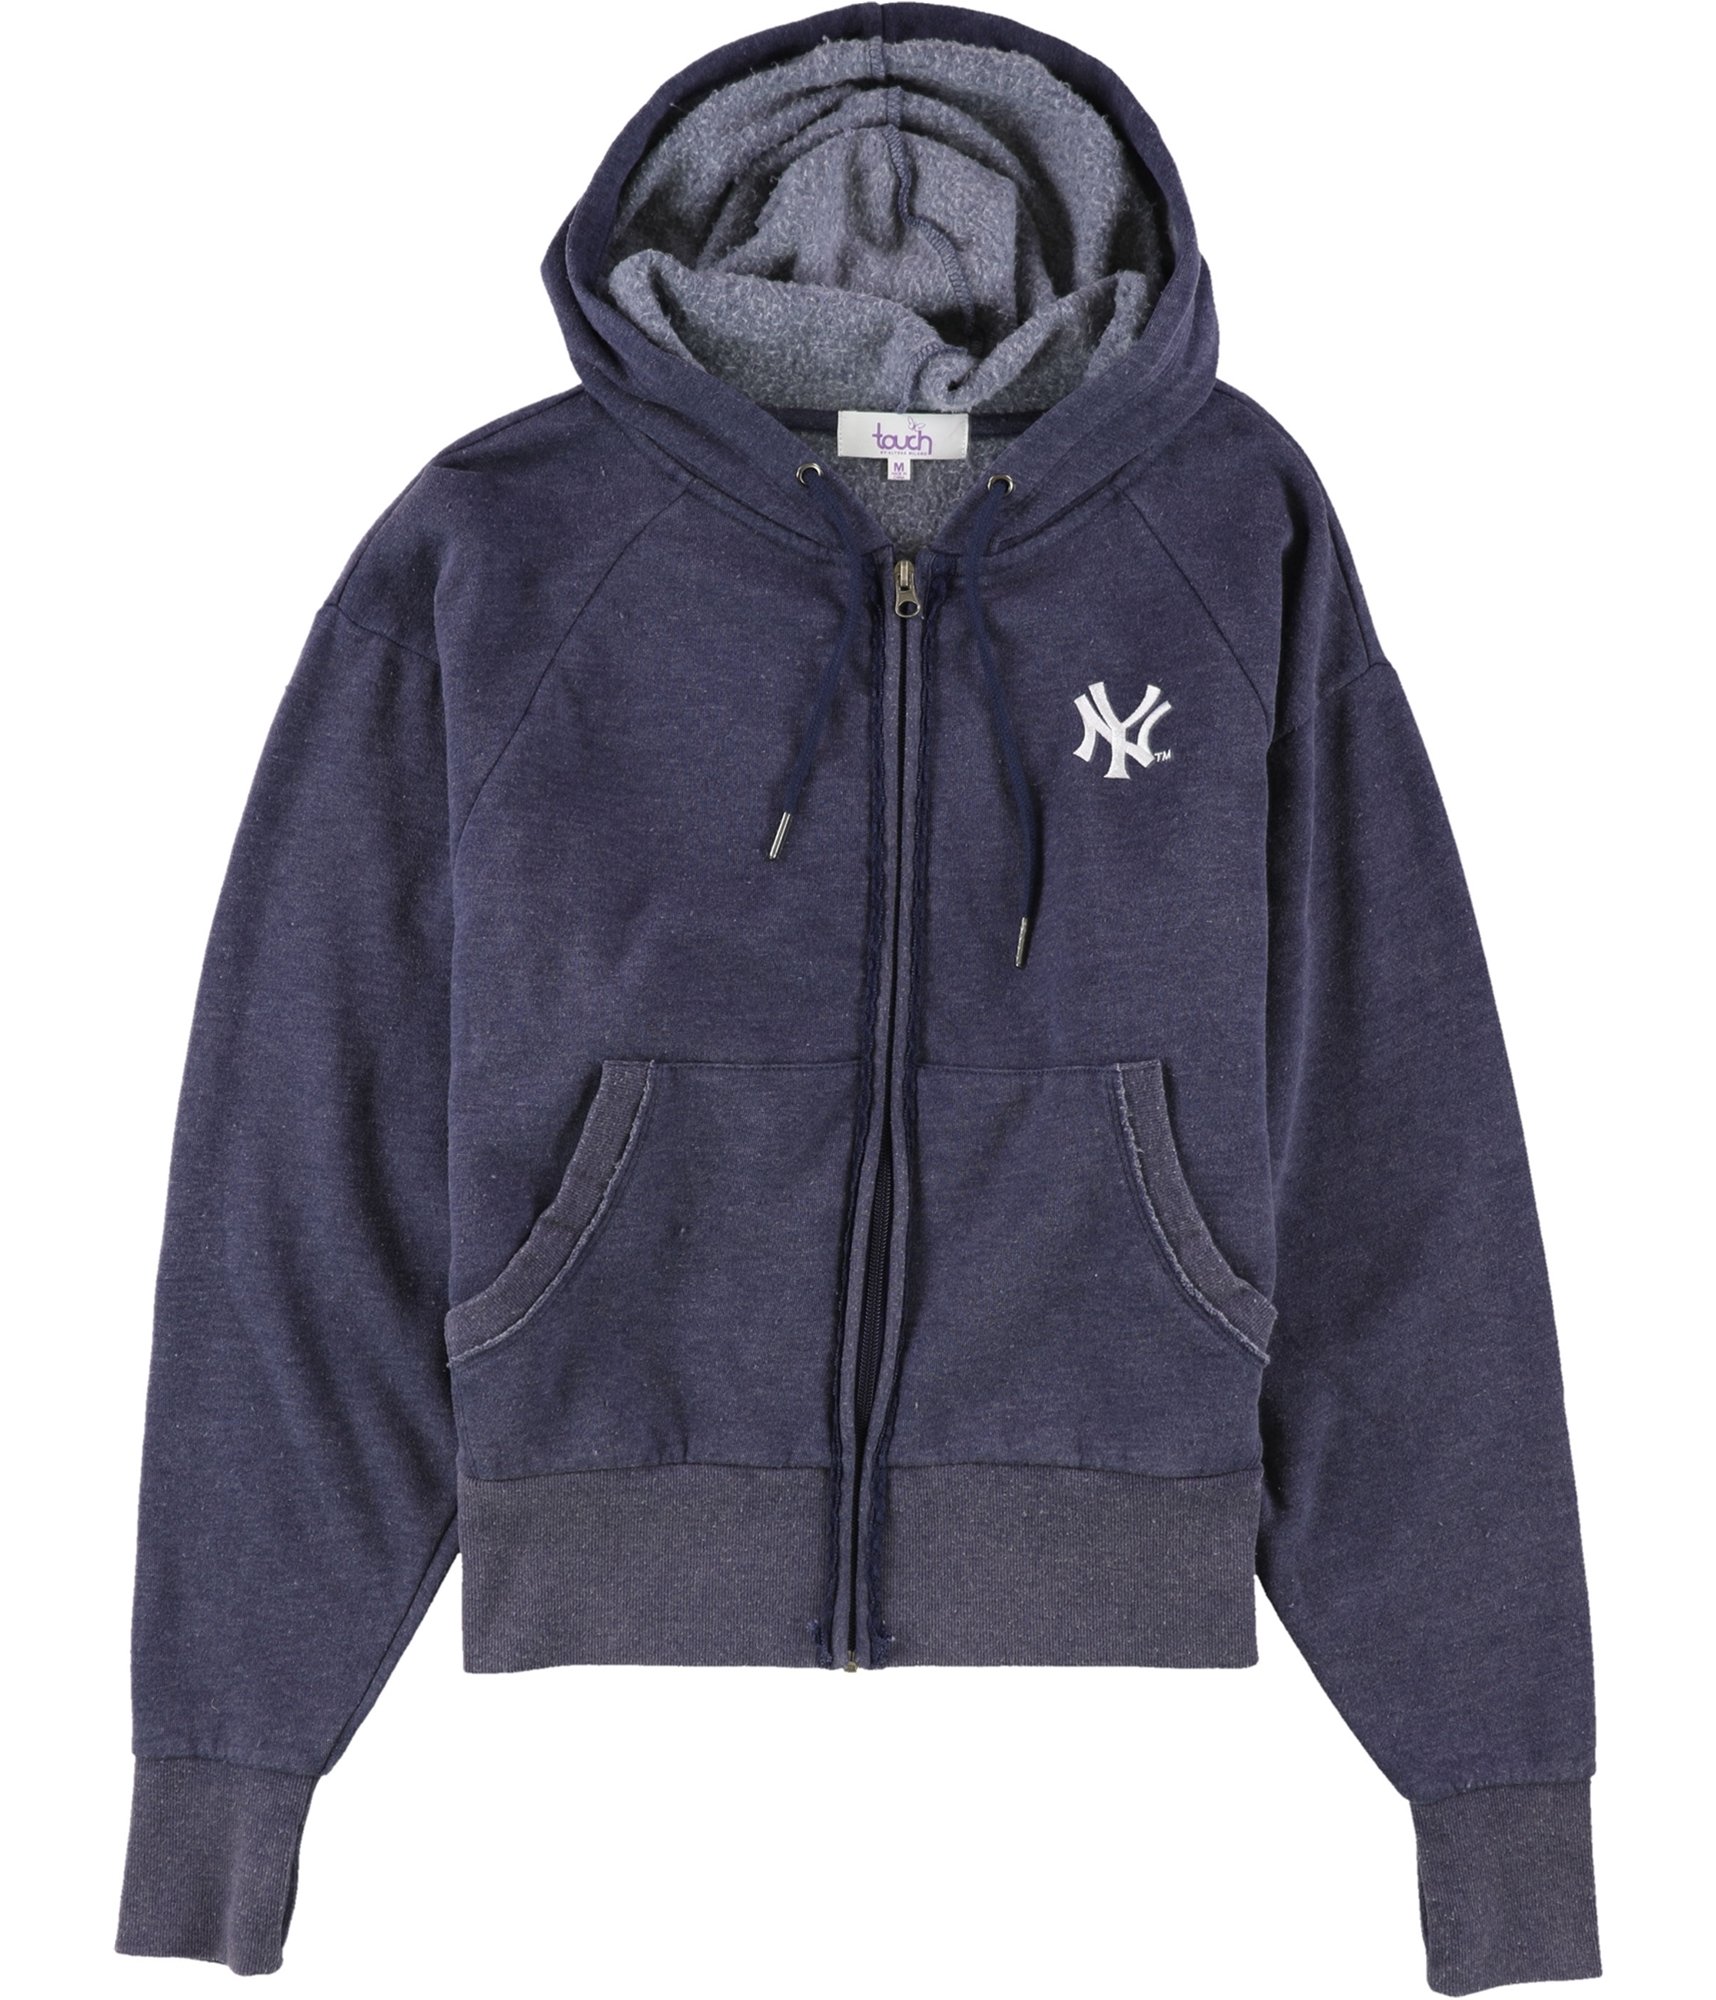 Buy a Womens Touch New York Yankees Hoodie Sweatshirt Online